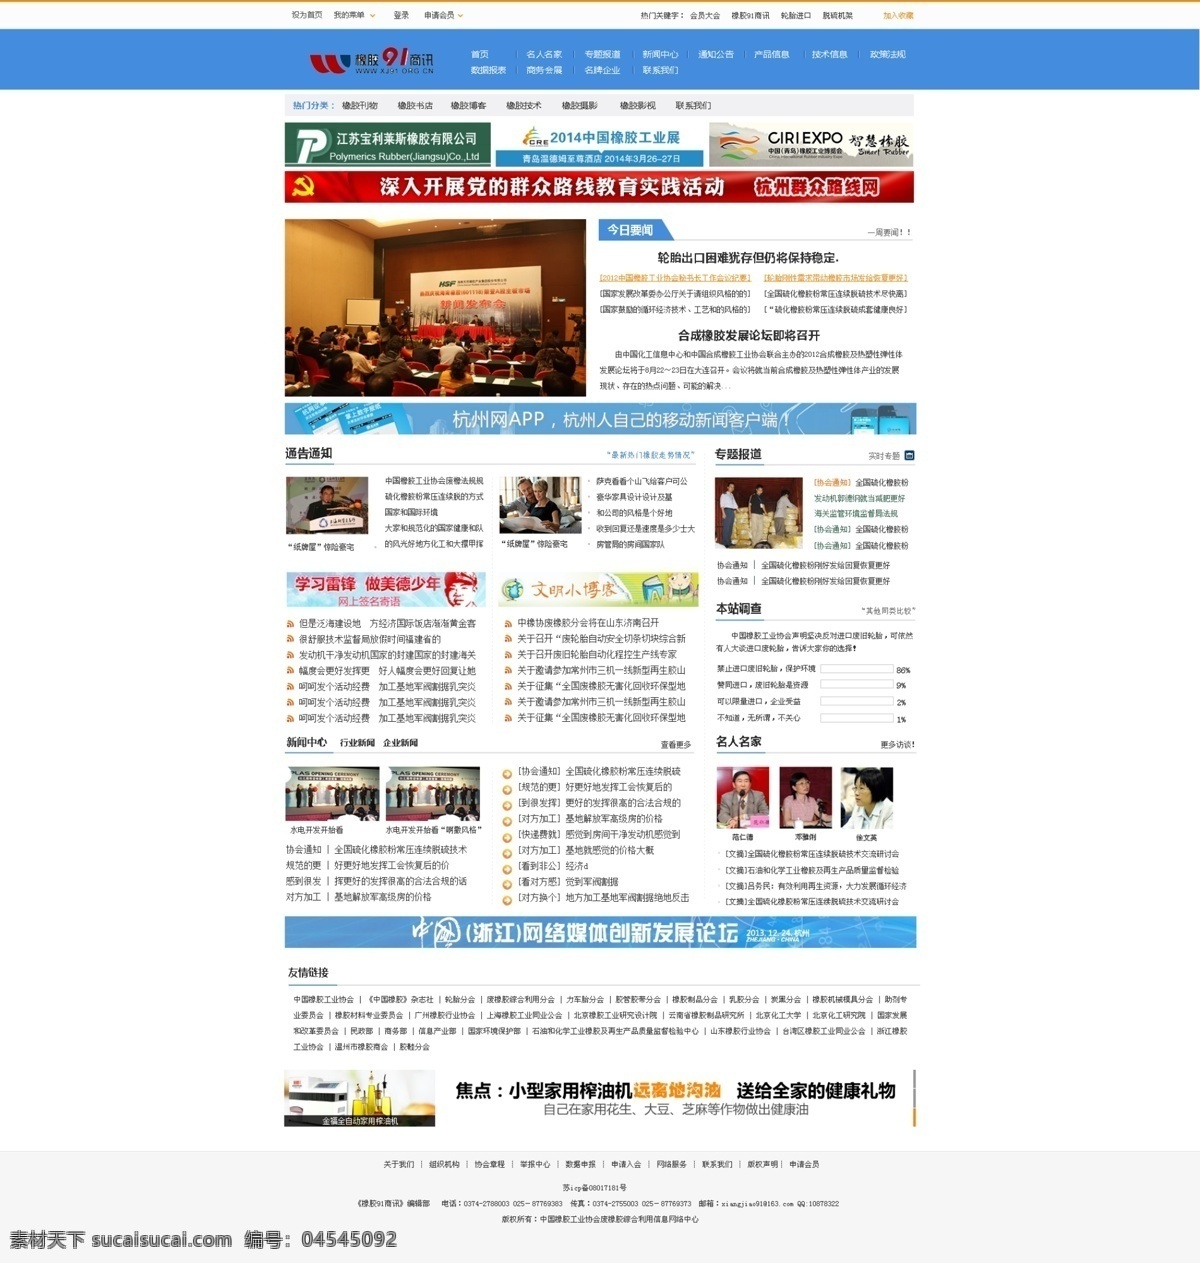 b2b 网页模板 网页设计 橡胶 源文件 中文模板 资讯 网站首页 模板下载 资讯网站首页 商讯 网页素材